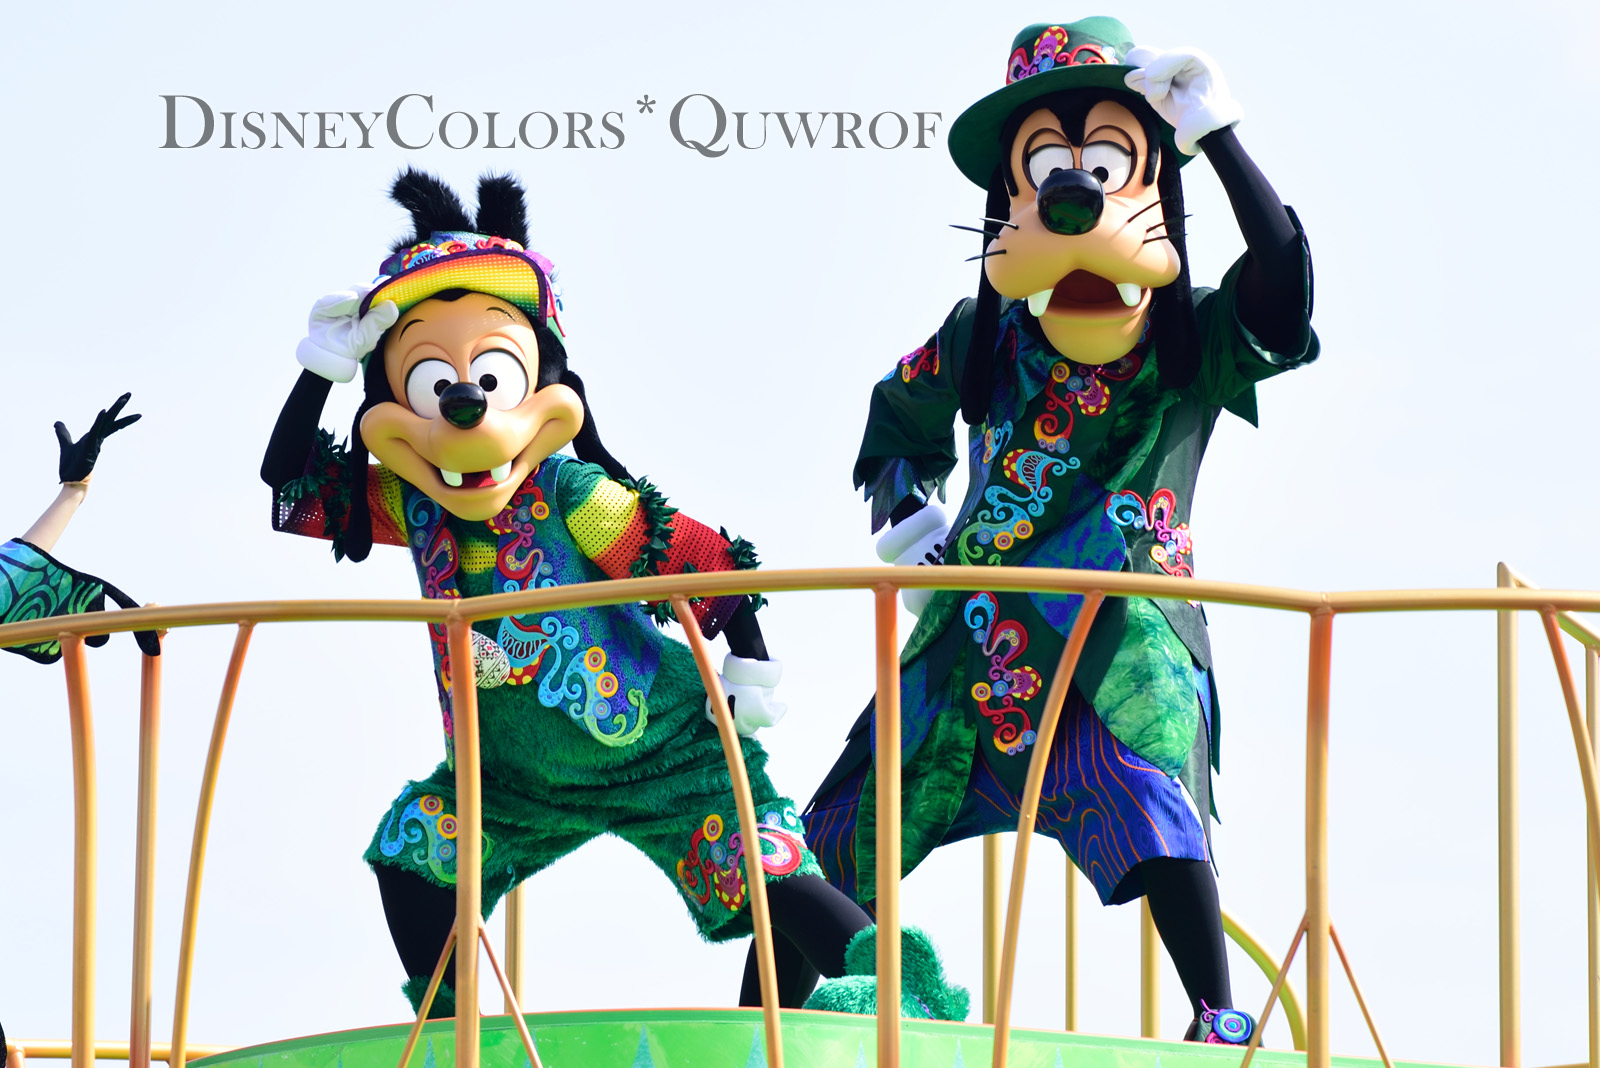 新衣装で ファッショナブル イースター 復活 Tds ディズニー イースター17 詳細発表 Disney Colors Blog